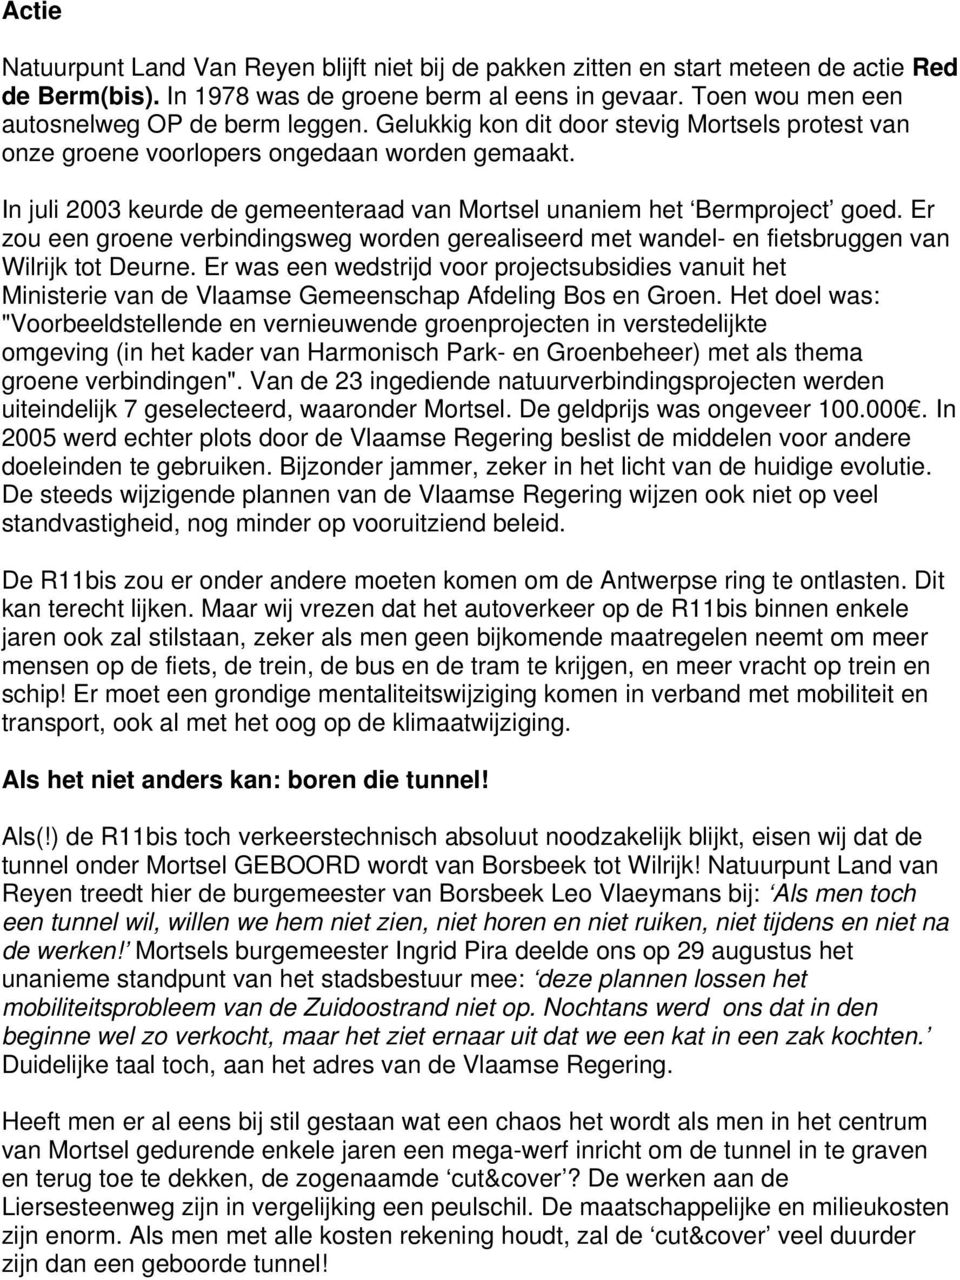 In juli 2003 keurde de gemeenteraad van Mortsel unaniem het Bermproject goed. Er zou een groene verbindingsweg worden gerealiseerd met wandel- en fietsbruggen van Wilrijk tot Deurne.